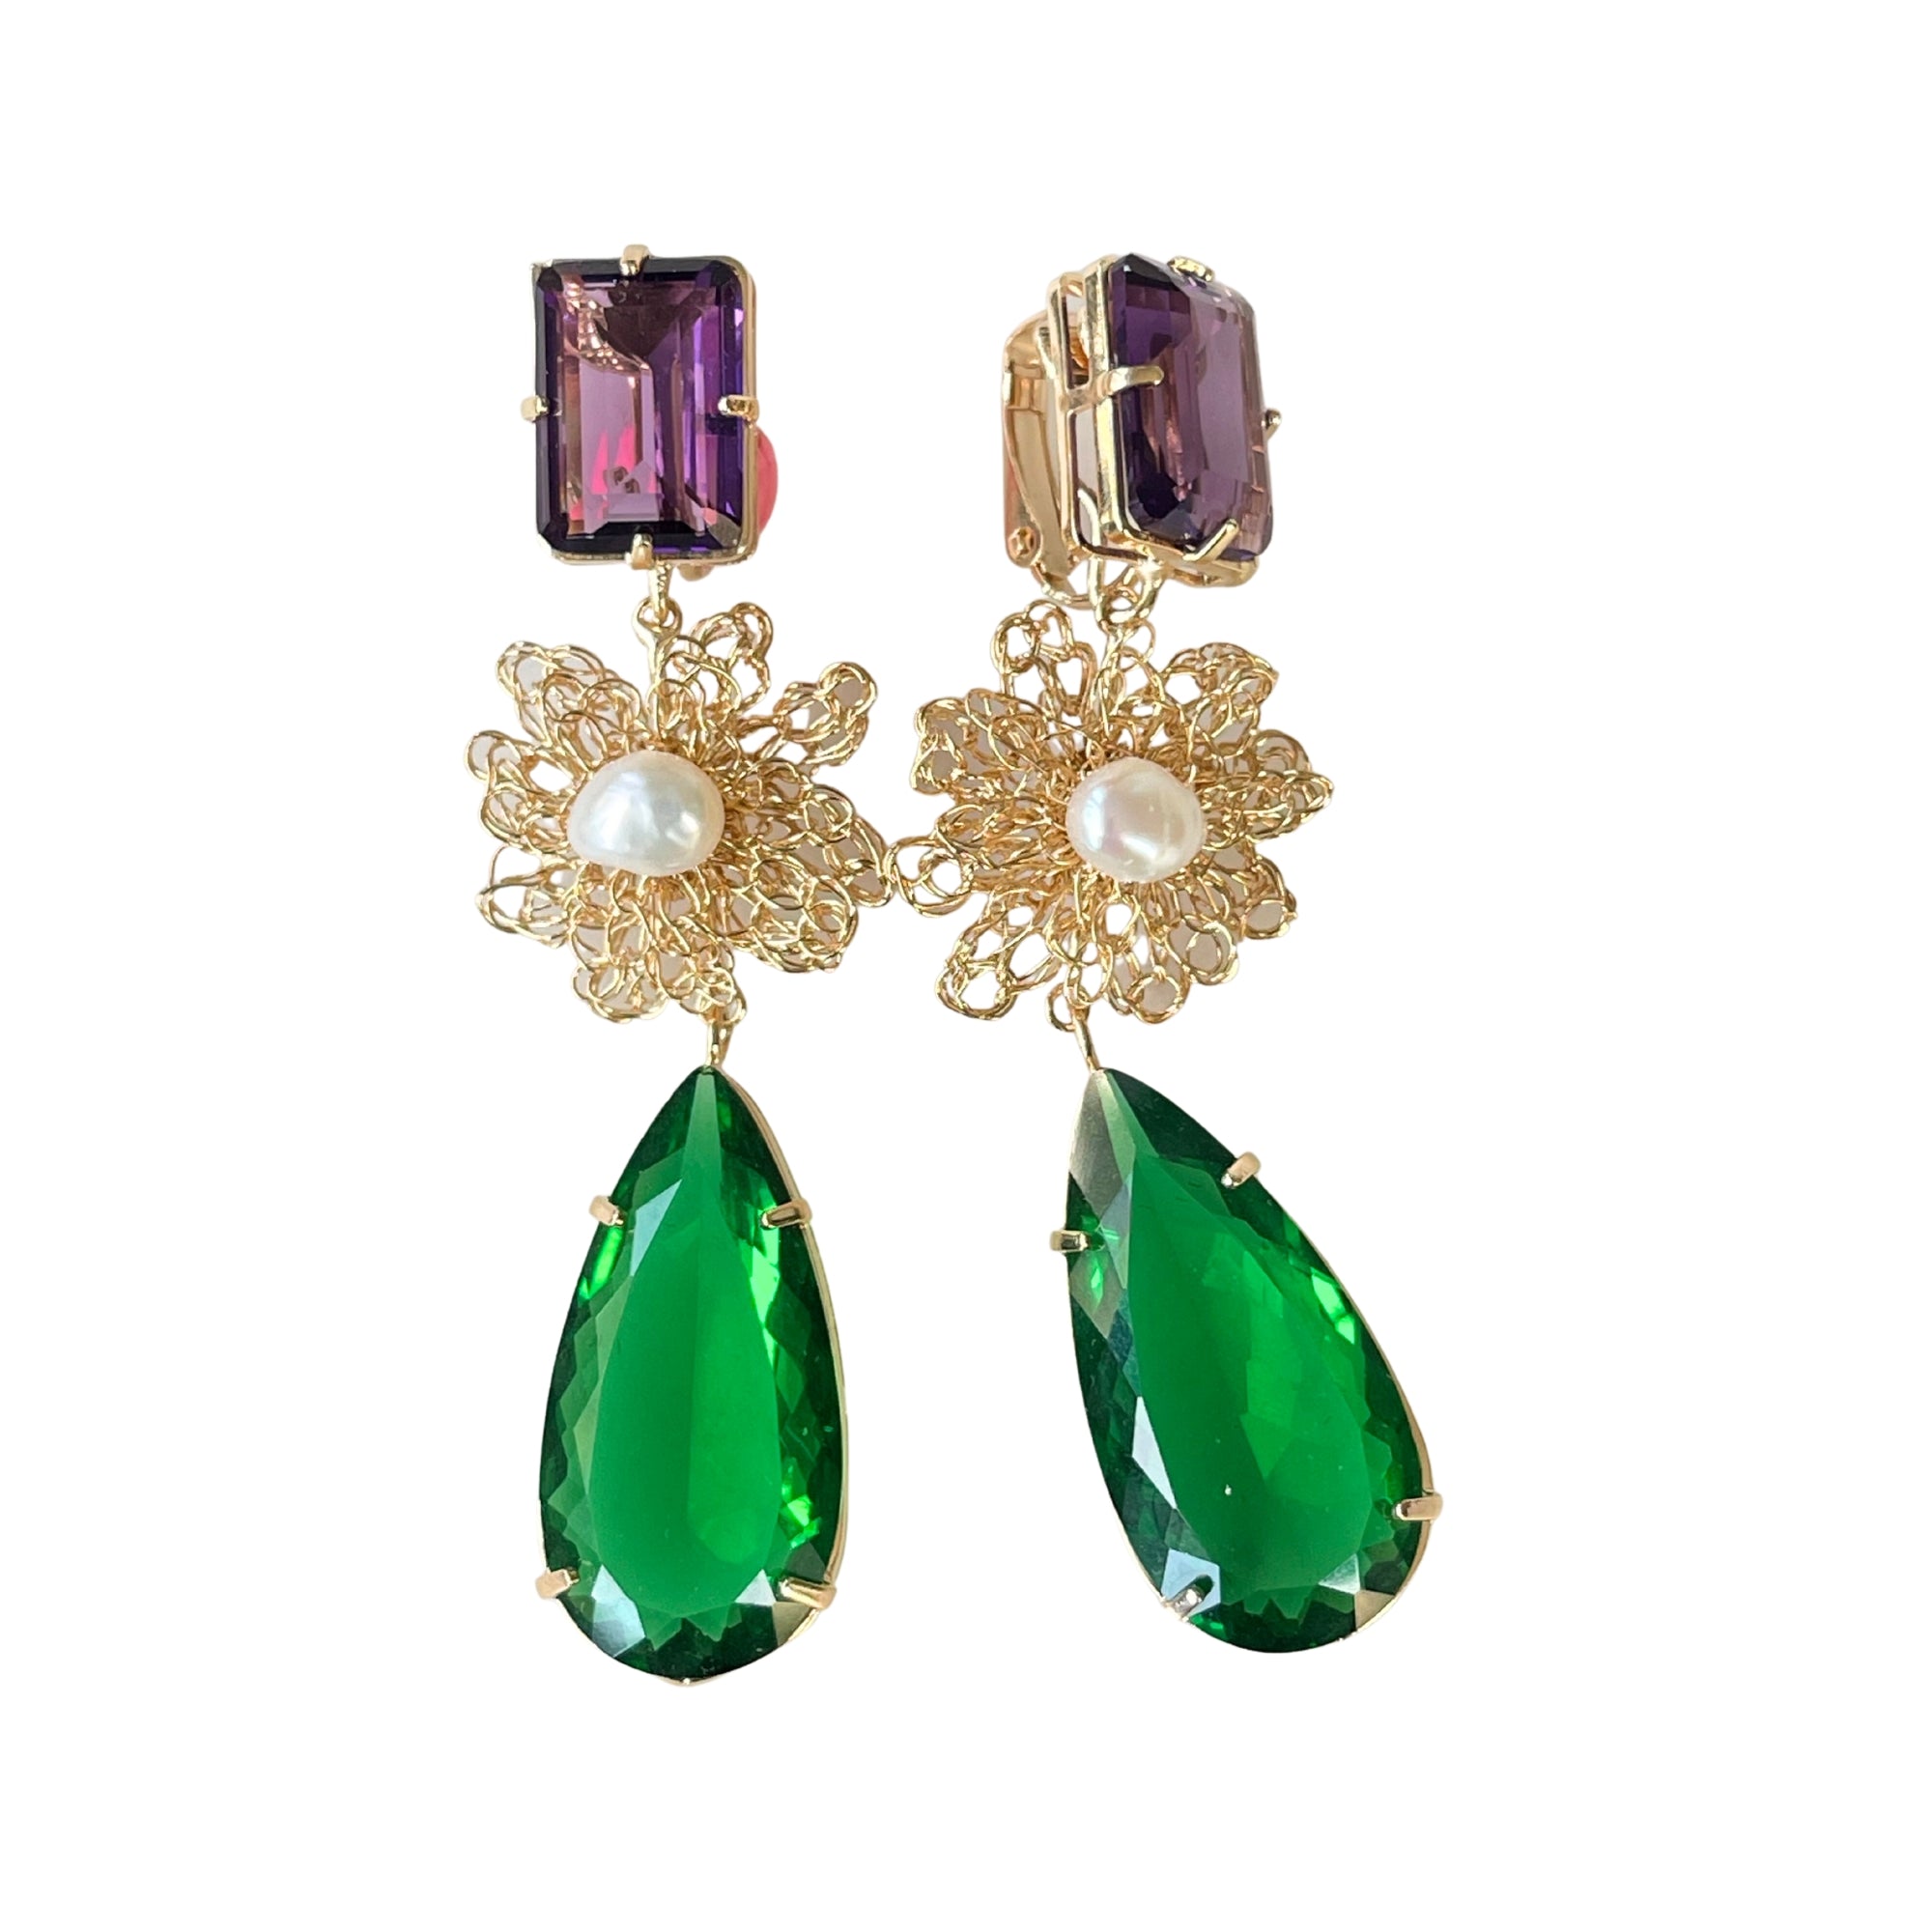 Ohrclip  LE CLOS NORMAND  mit grünen und lila Kristallen - Eleganter und vielseitiger Schmuck - Alessandra Schmidt Jewelry